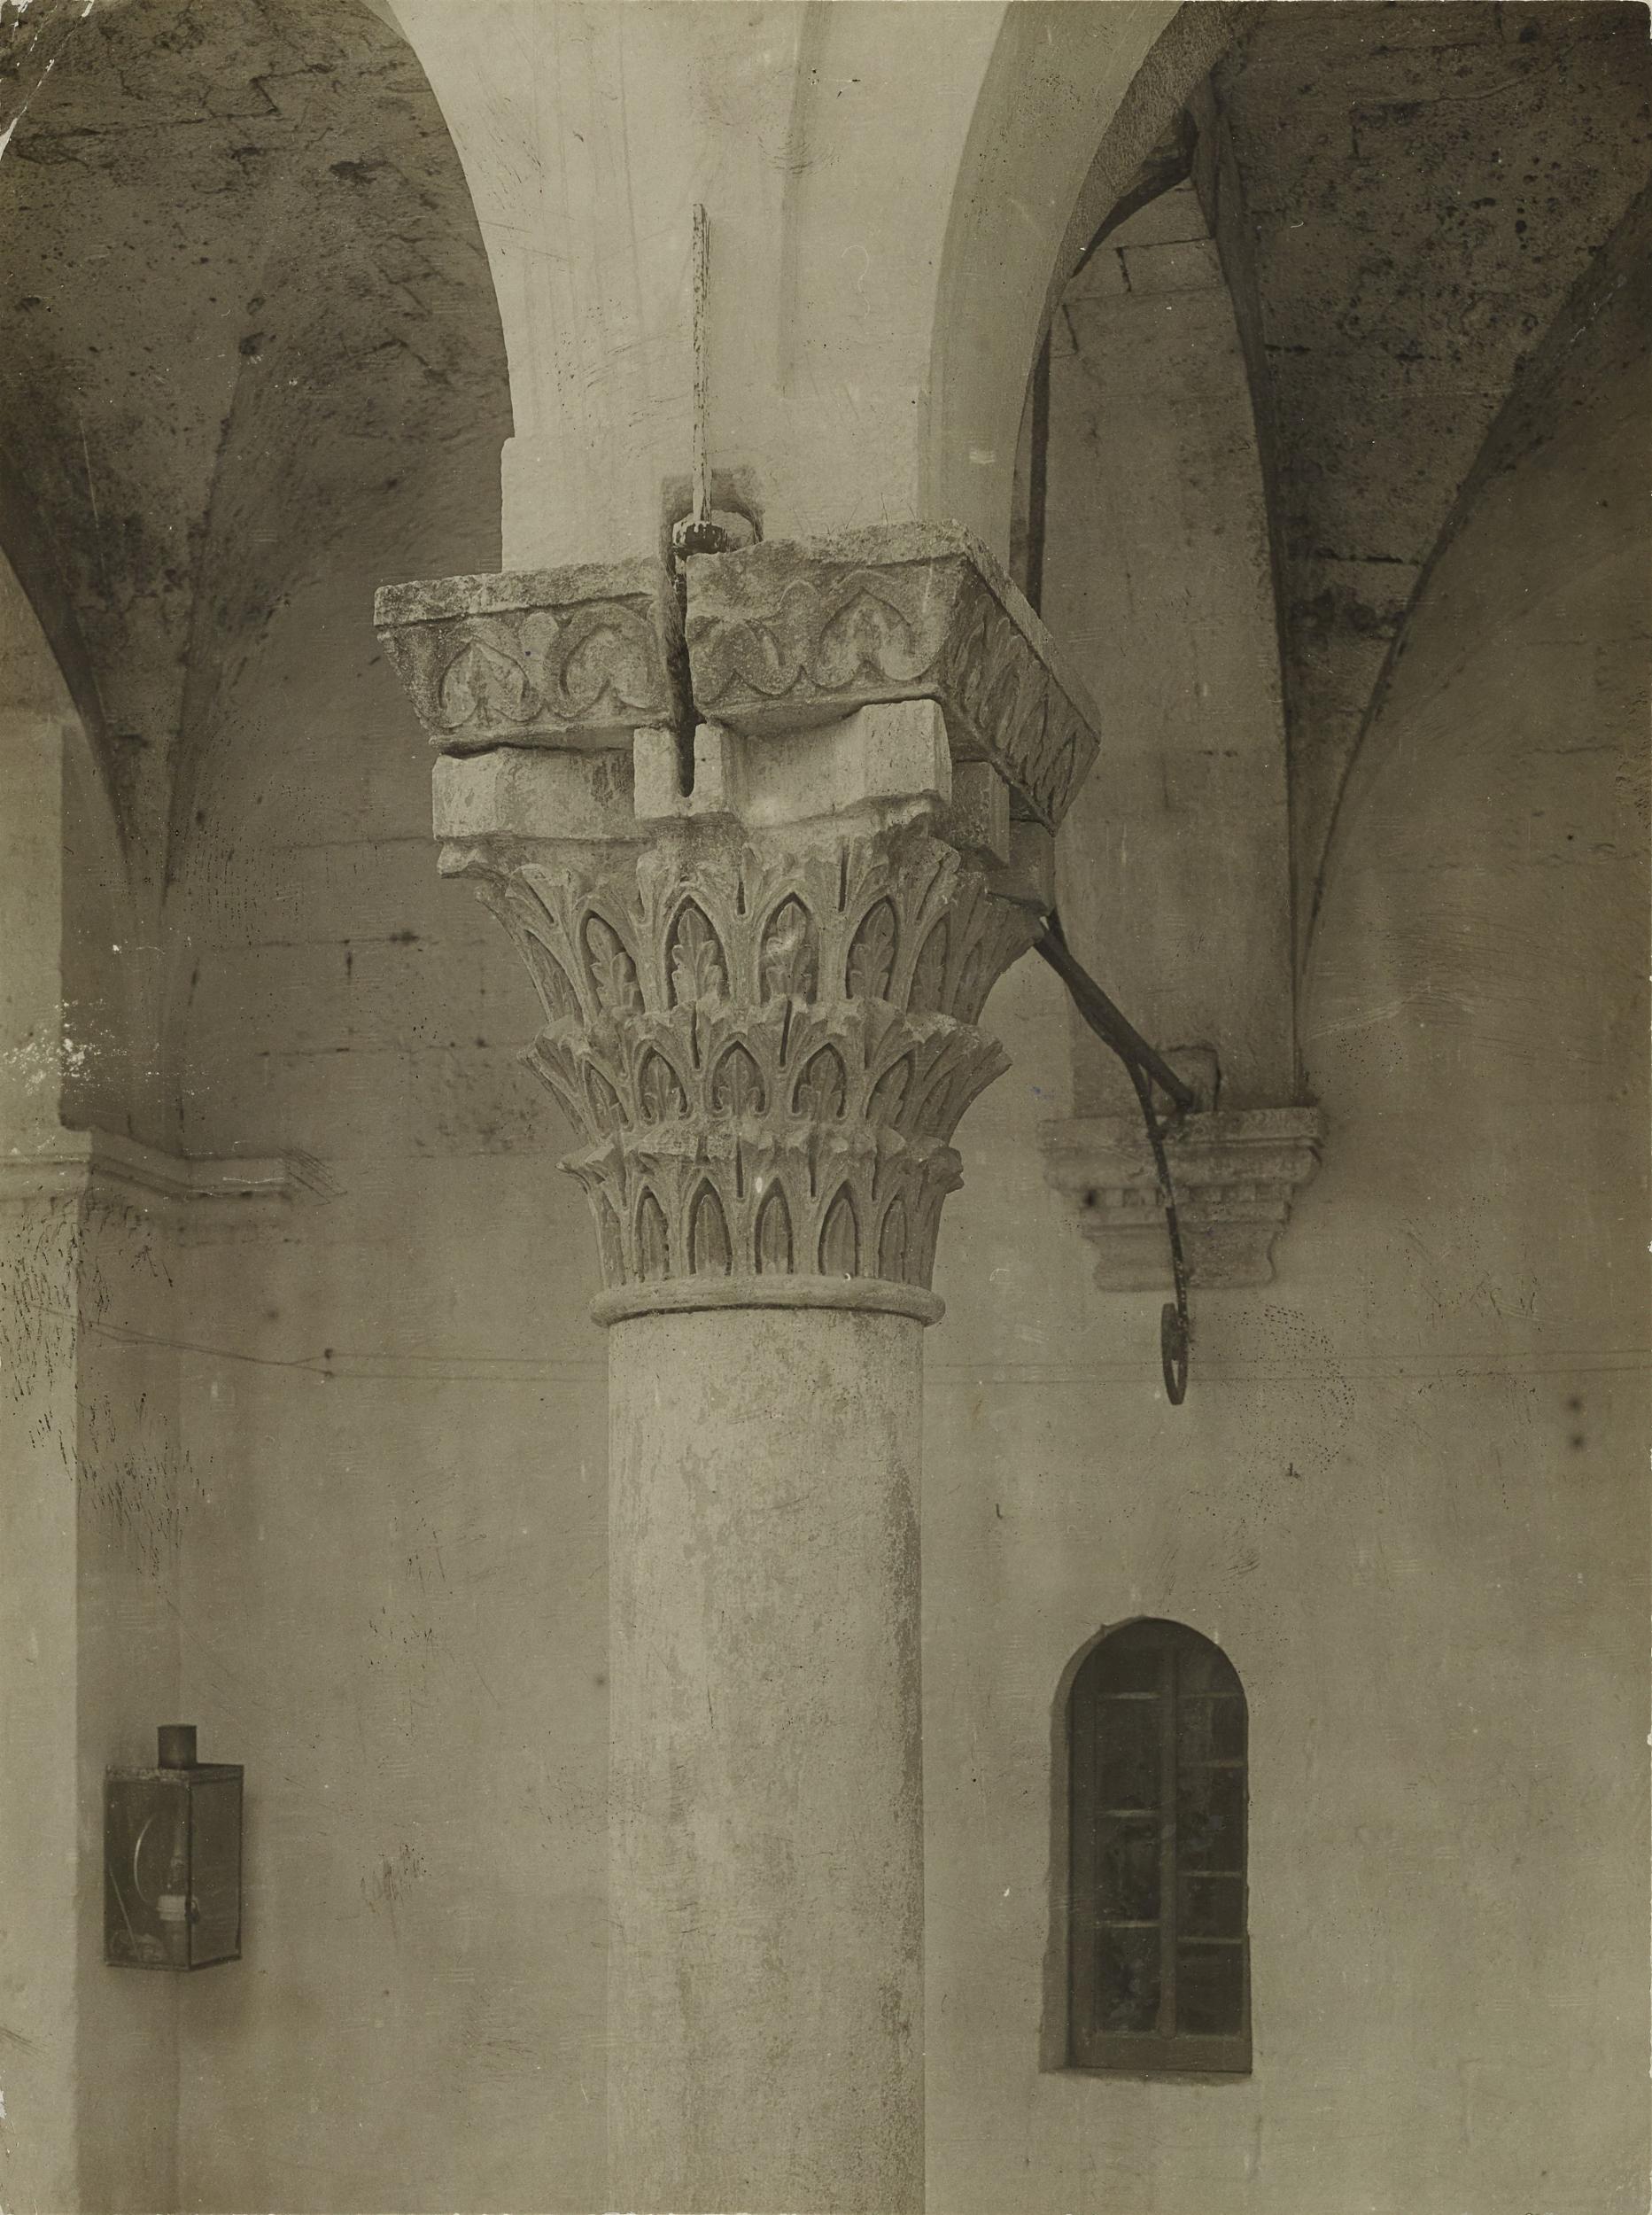 Fotografo non identificato,  Bari - Castello, capitello, 1901-1925, gelatina ai sali d'argento/carta, 1901-1925, MPI6018861